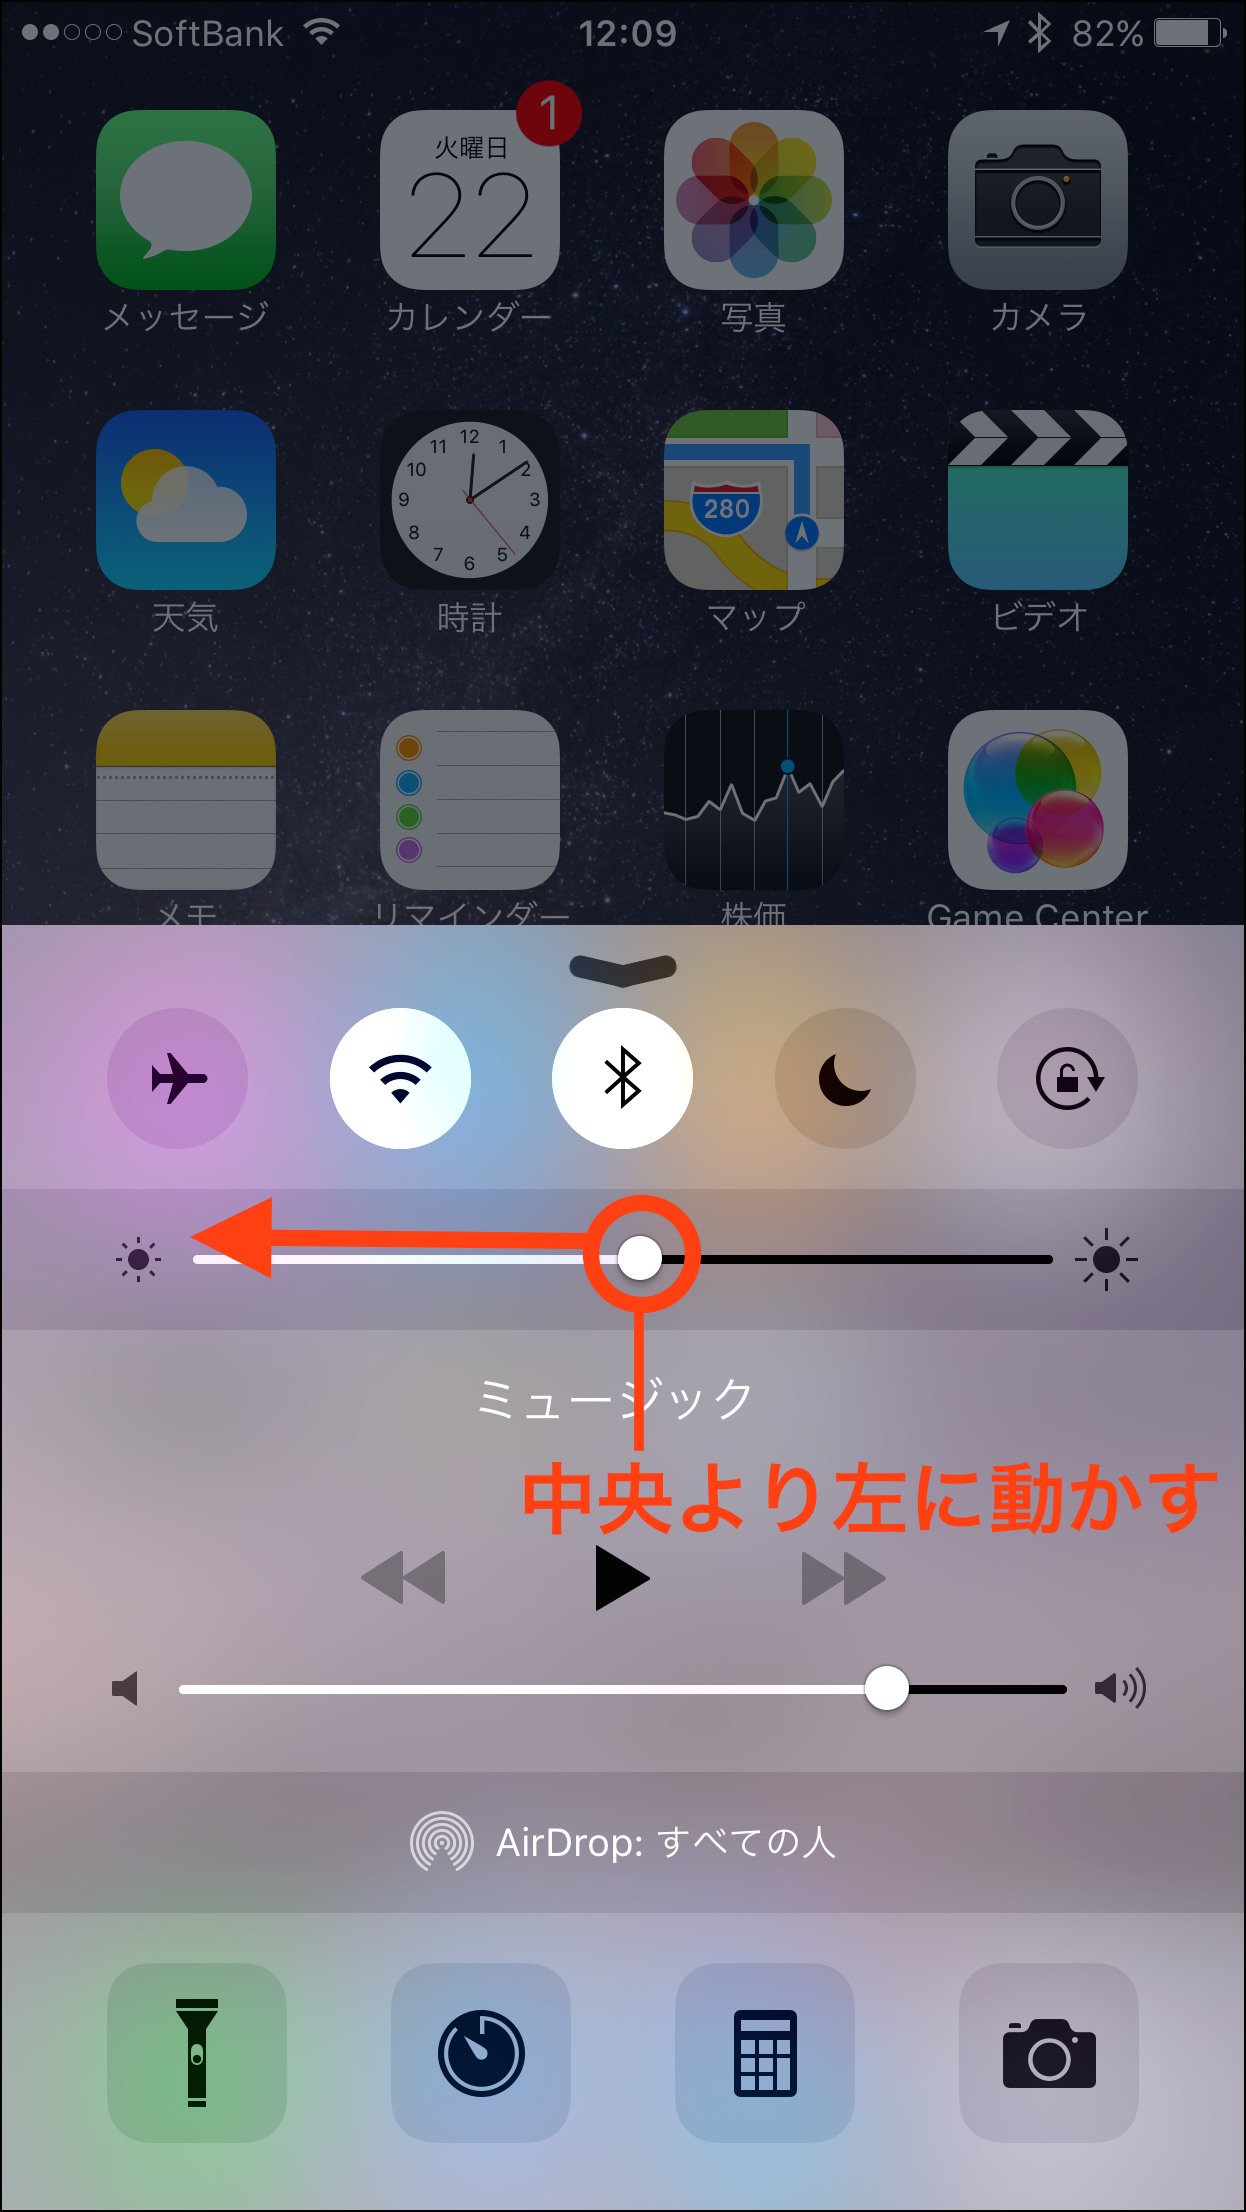 Iphoneのバッテリー駆動時間を少しでも延ばすためにやっておきたいこと シルバーウィークに効くiphone Tips Engadget 日本版